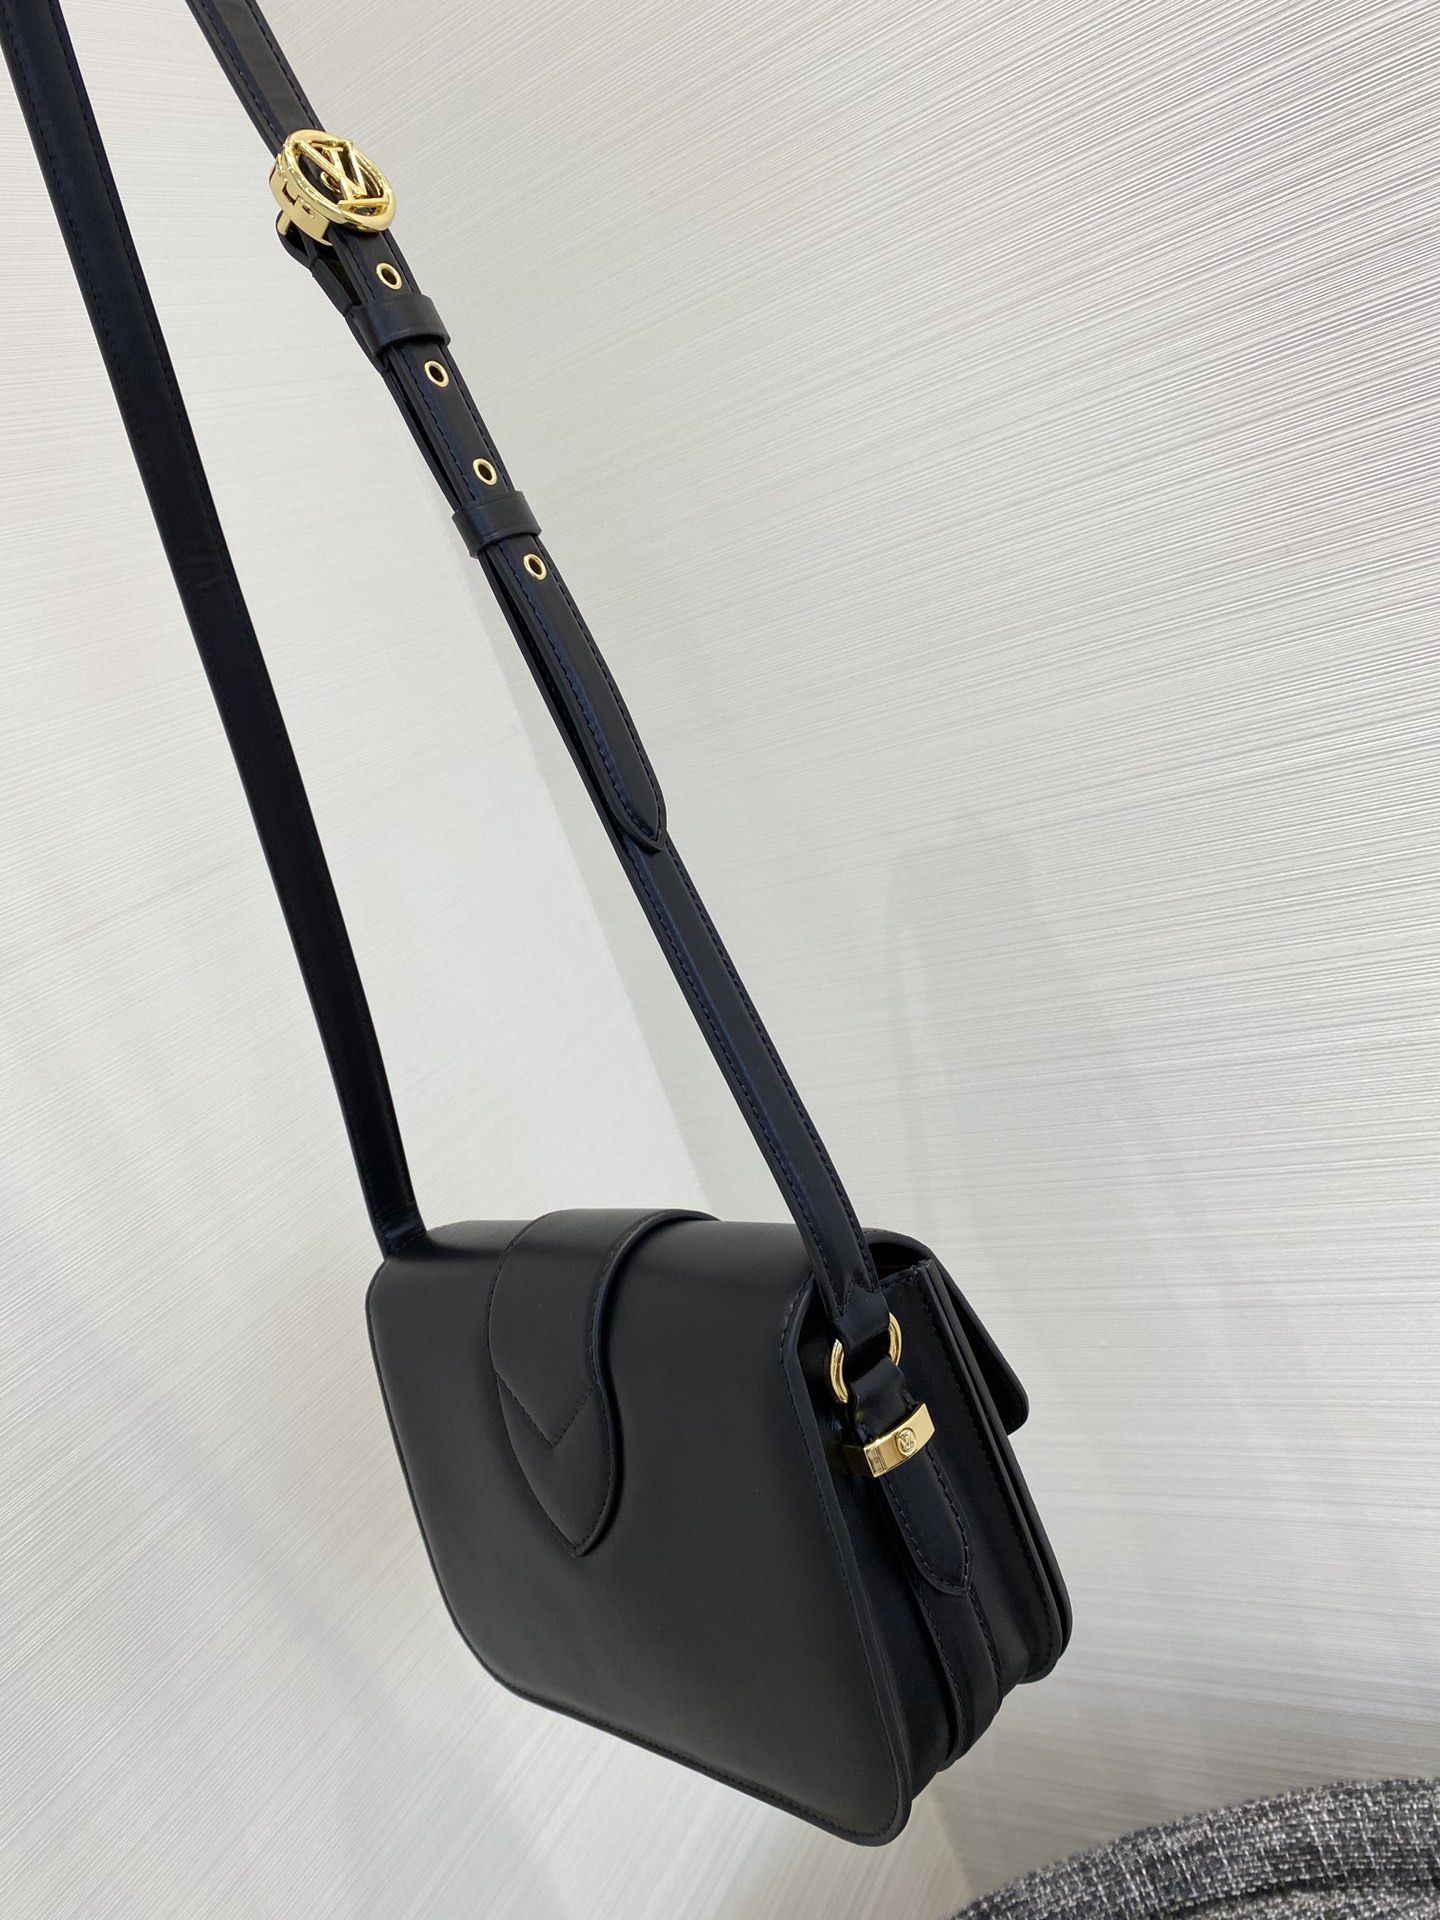 【￥1580】全新的Pont9手袋55897 以浪漫的巴黎新( pont neuf)为灵感 表现巴黎女子轻松优雅的时尚态度